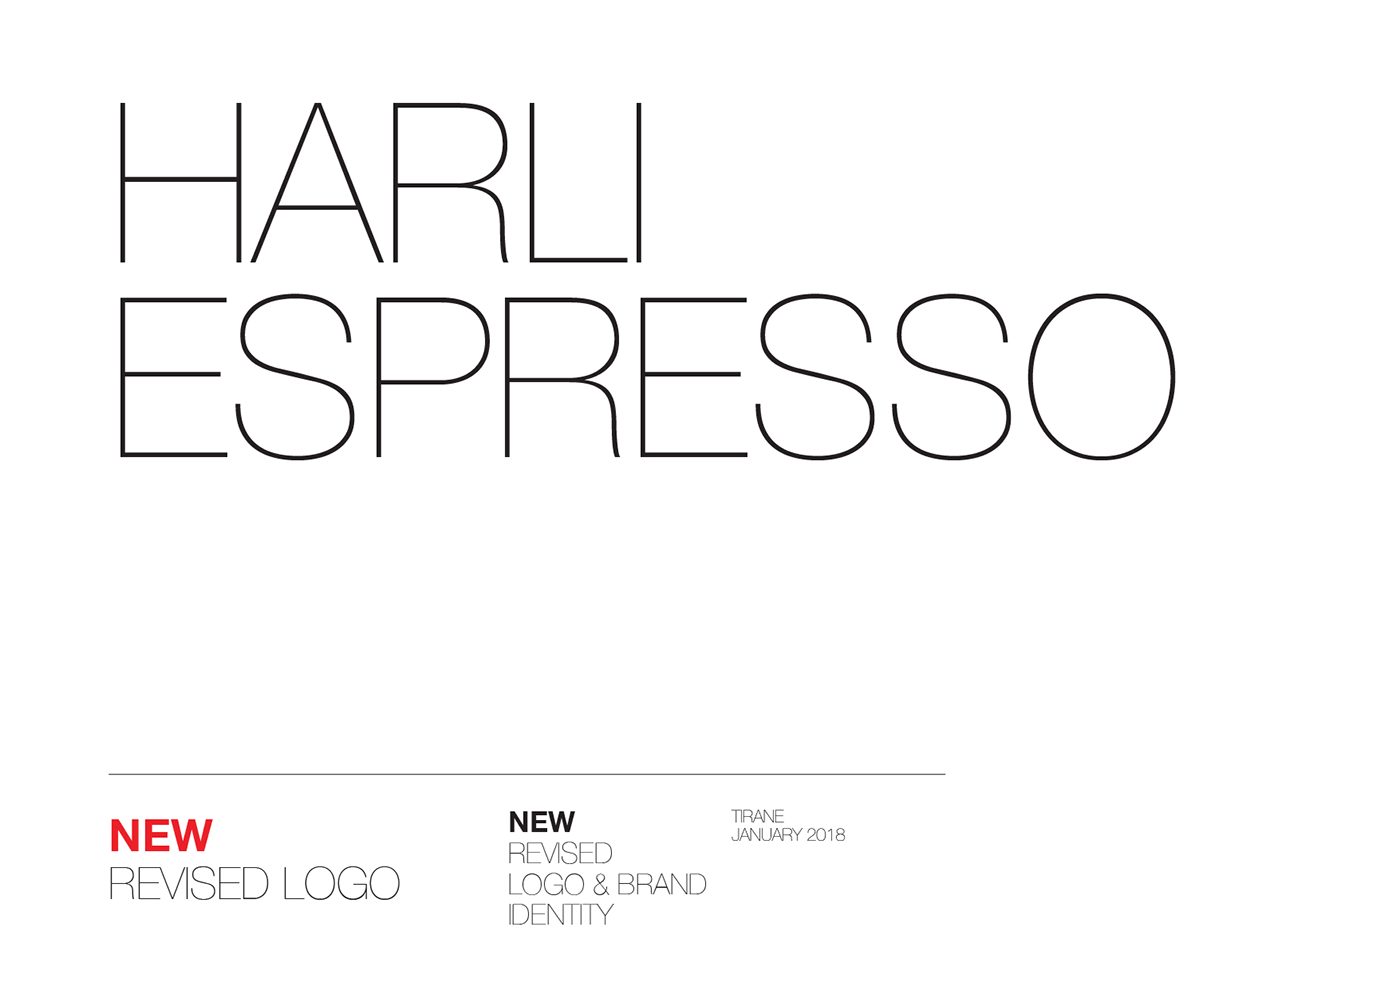 Revised Logo - Harli Espresso / New Revised Logo & Brand Identity on Behance